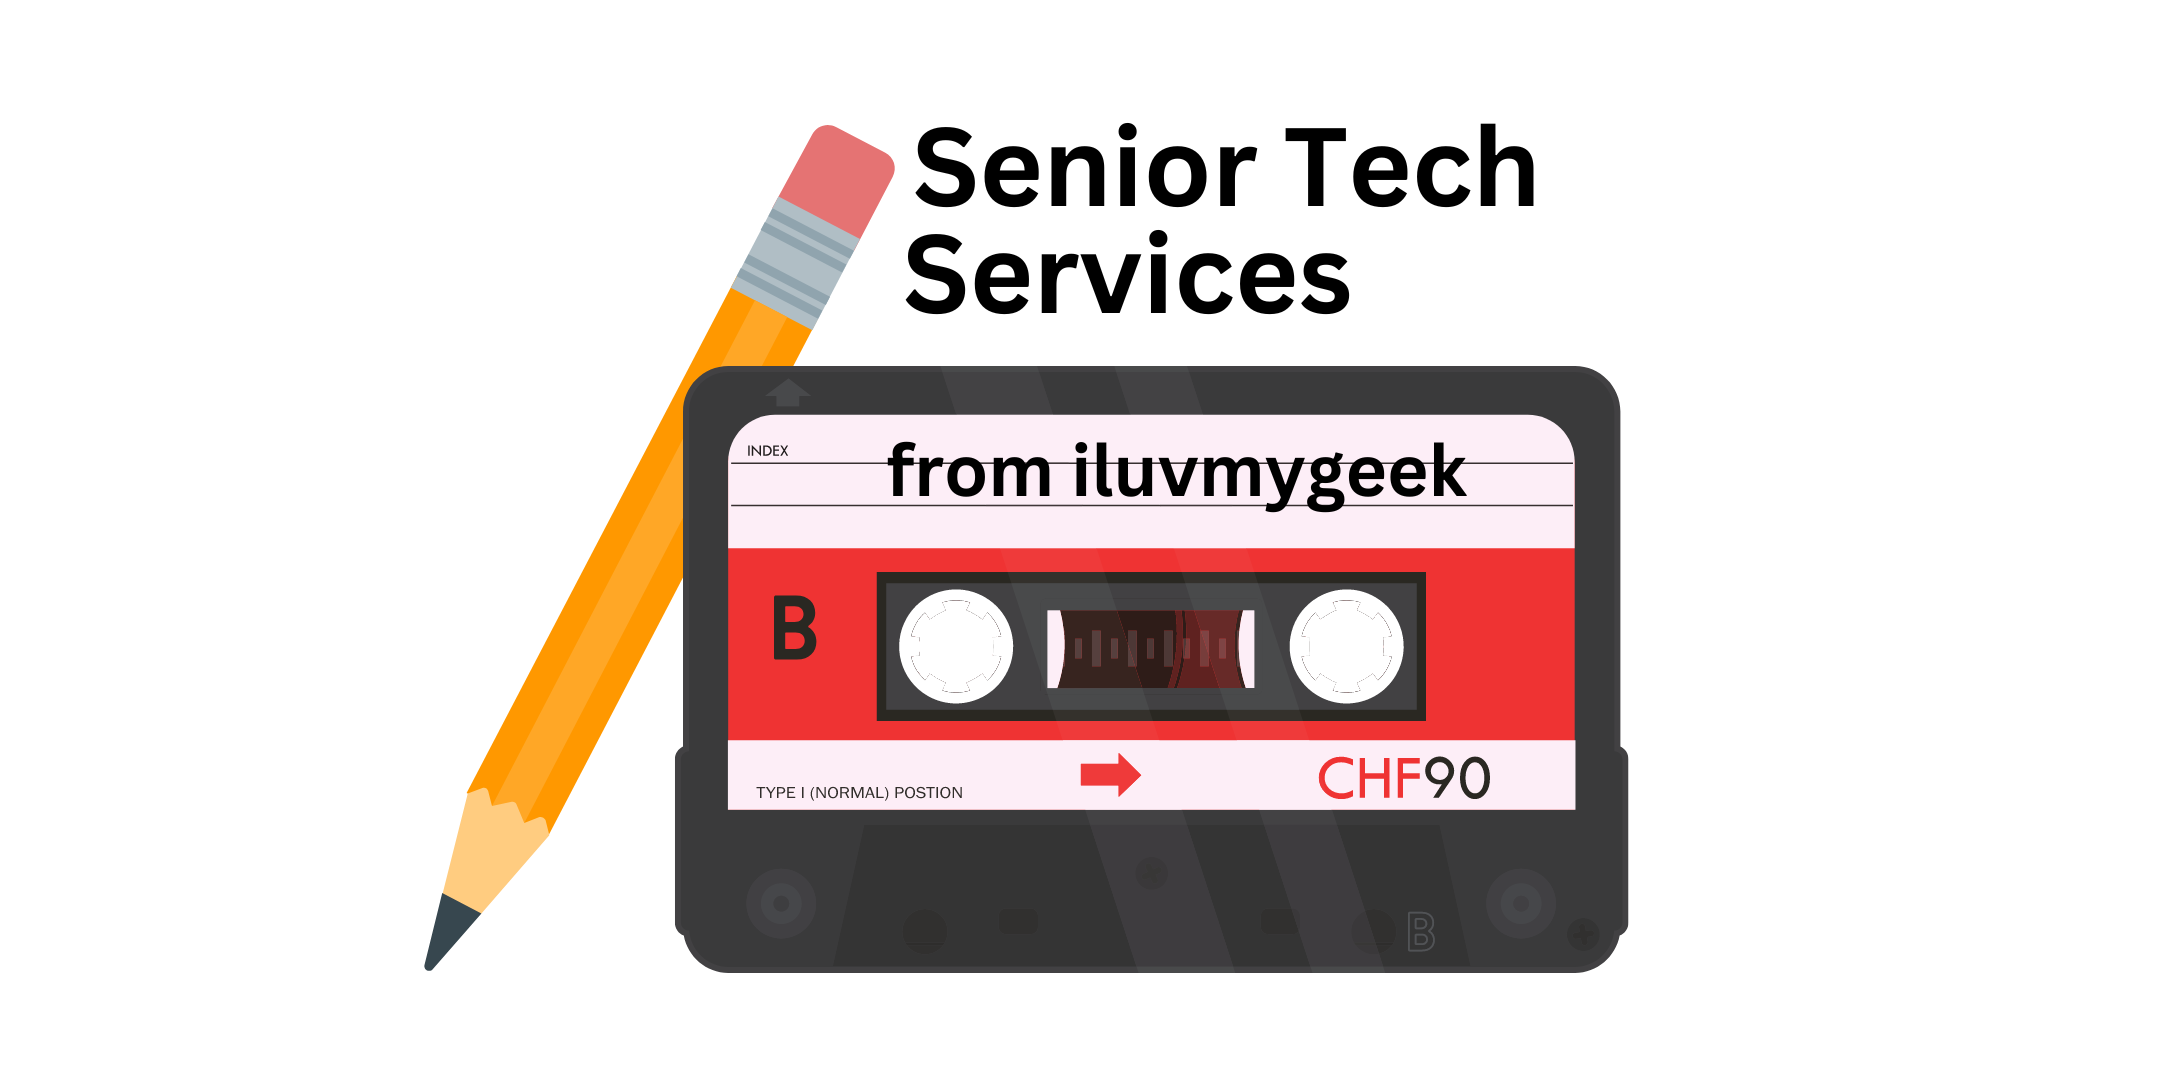 #seniortechservices